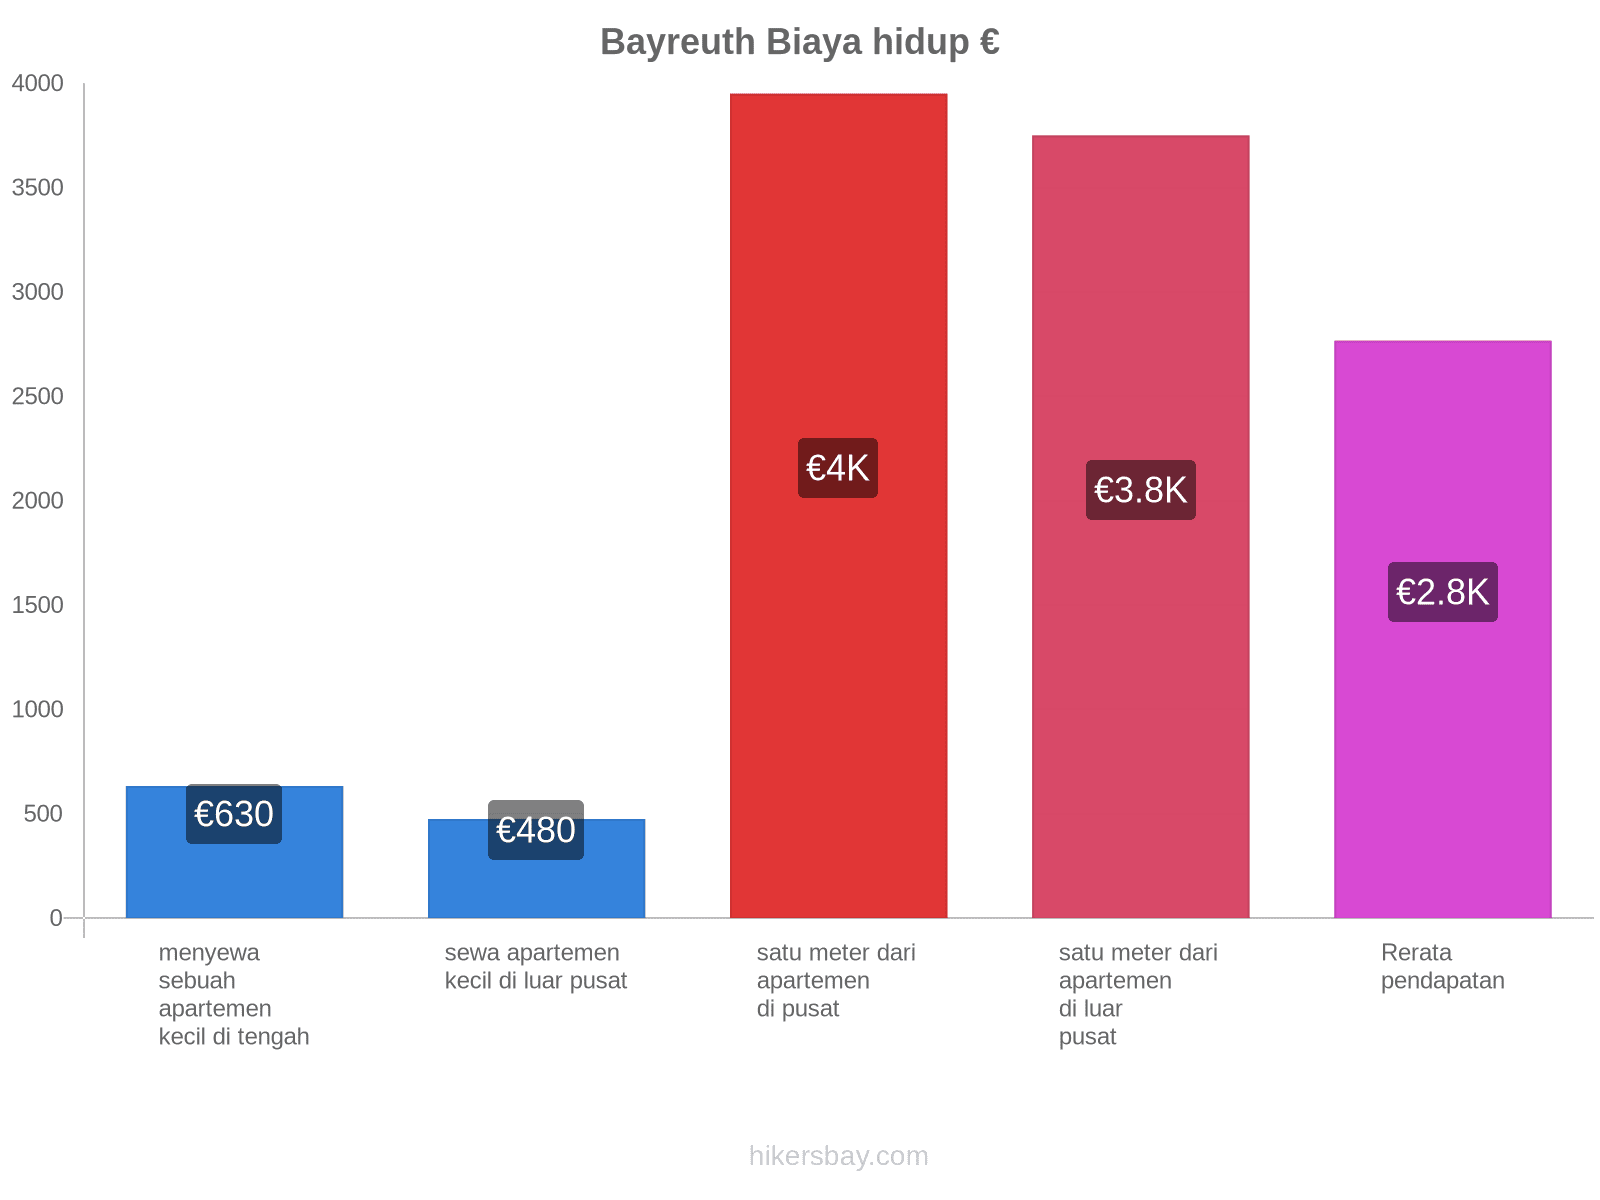 Bayreuth biaya hidup hikersbay.com